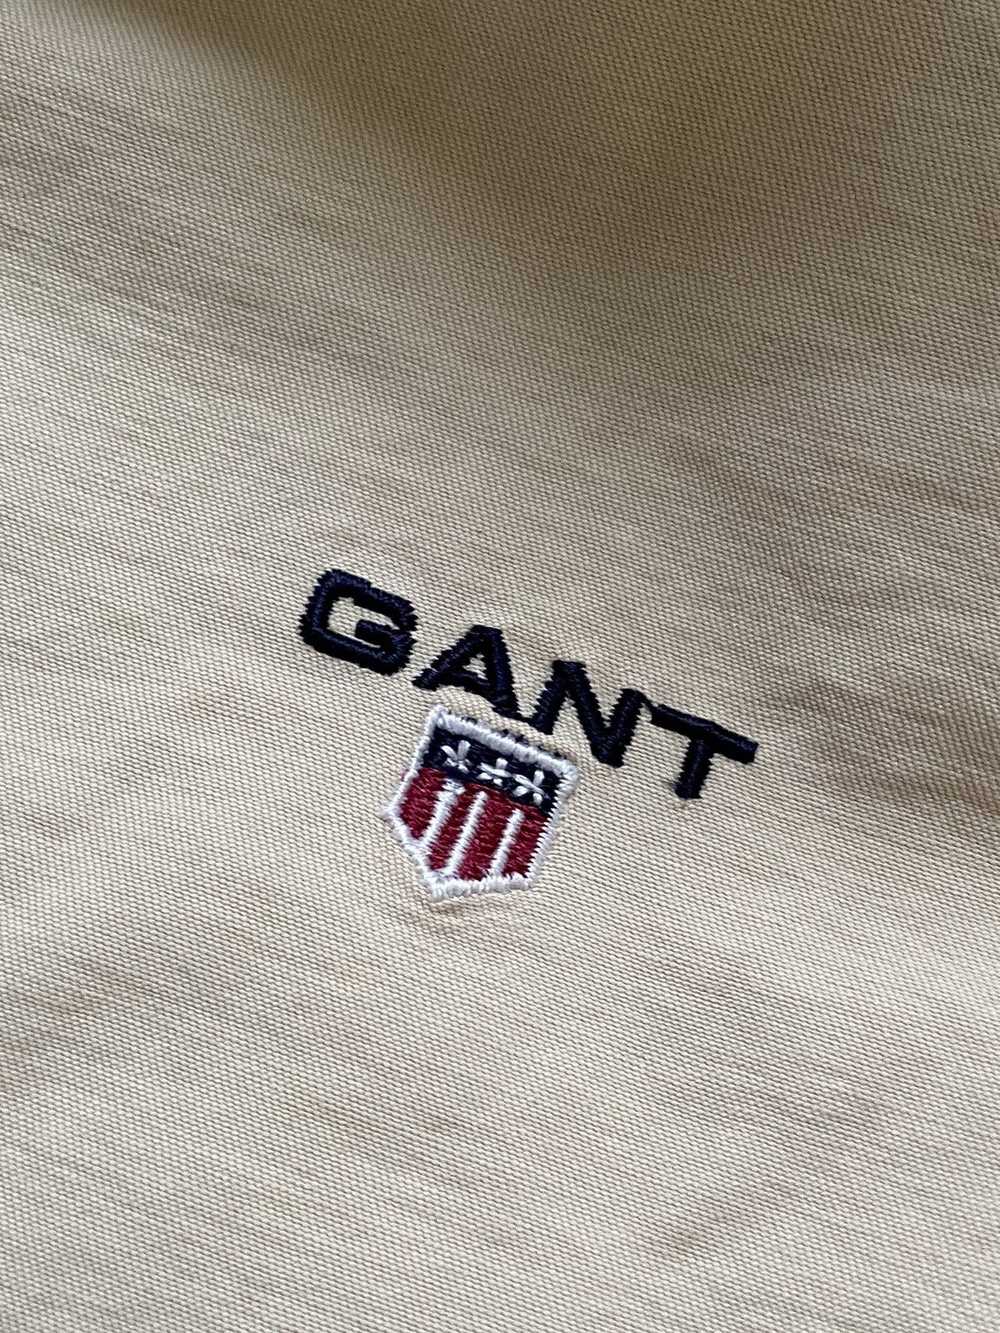 Gant × Streetwear × Vintage Vintage Gant Jacket F… - image 6